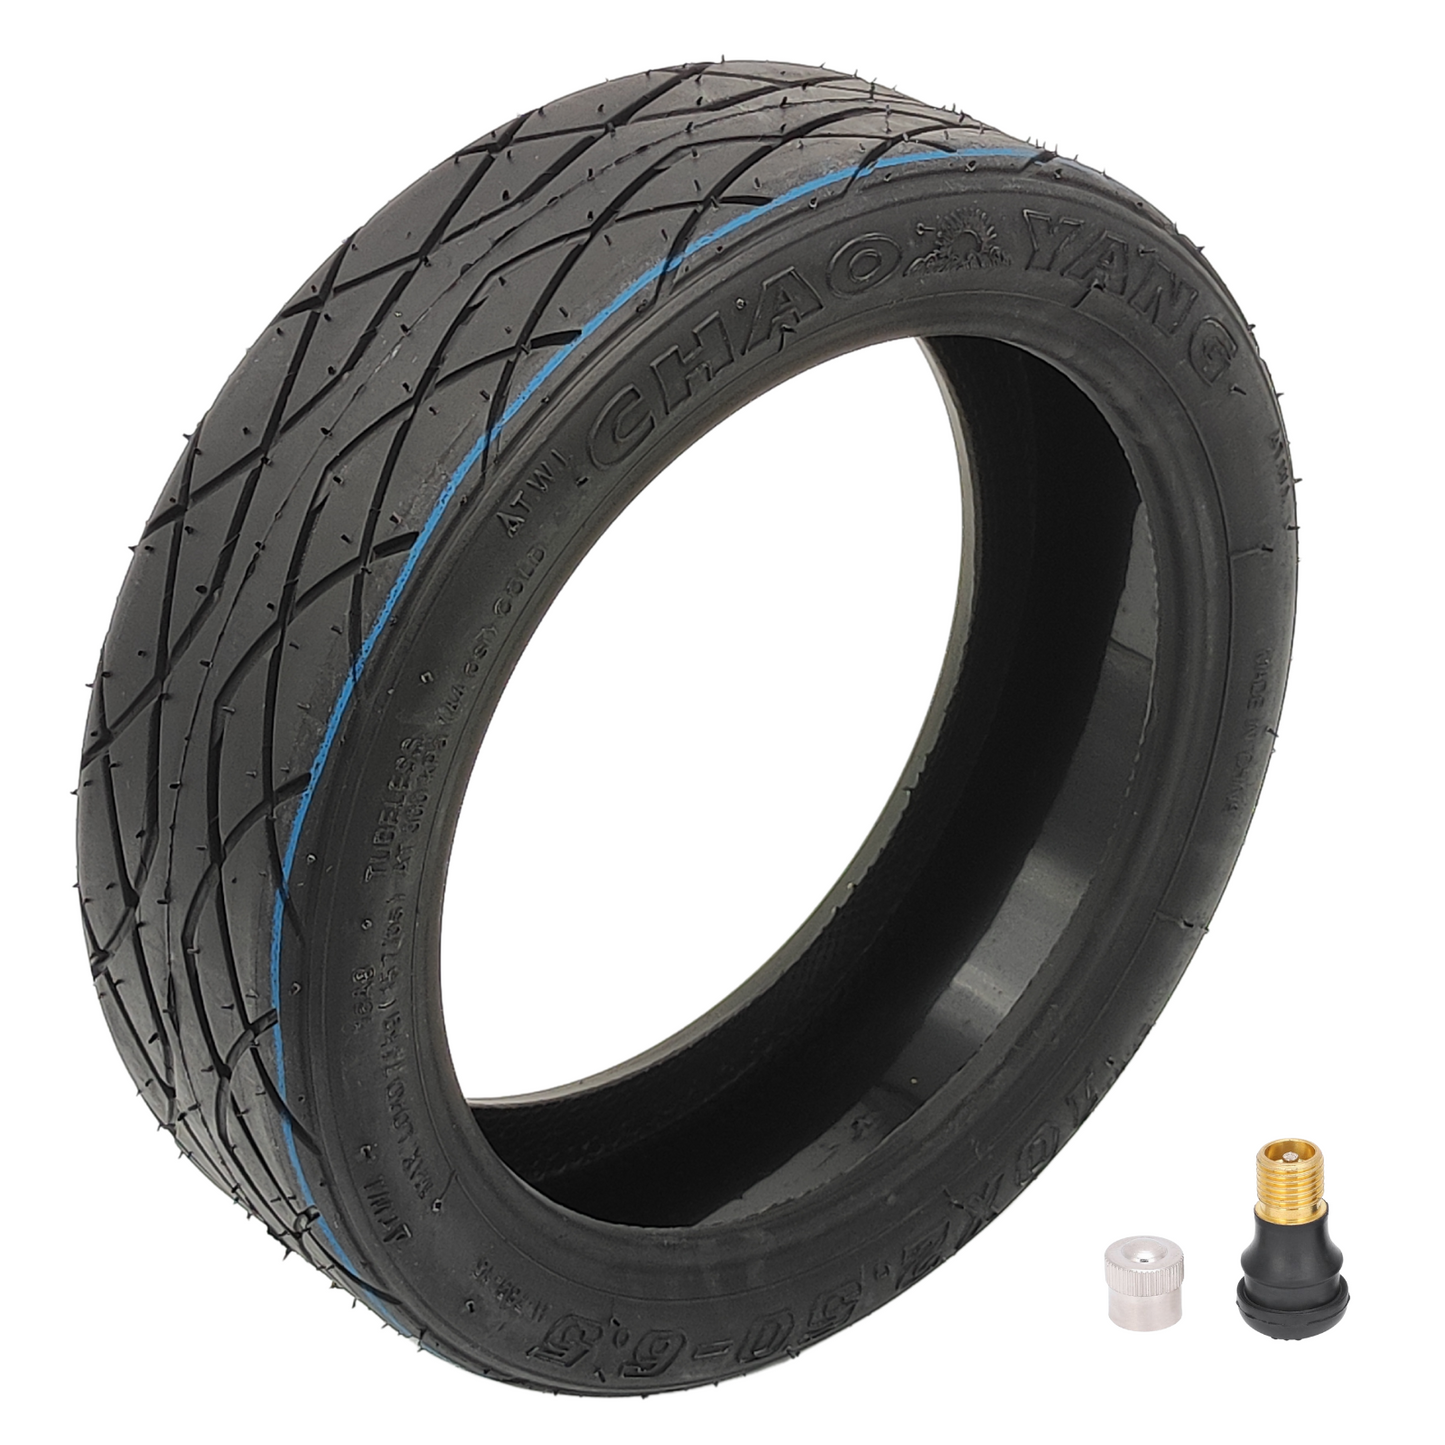 Neumáticos sin cámara para patinete eléctrico ePF-2 10x2,5-6,5 con capa de gel